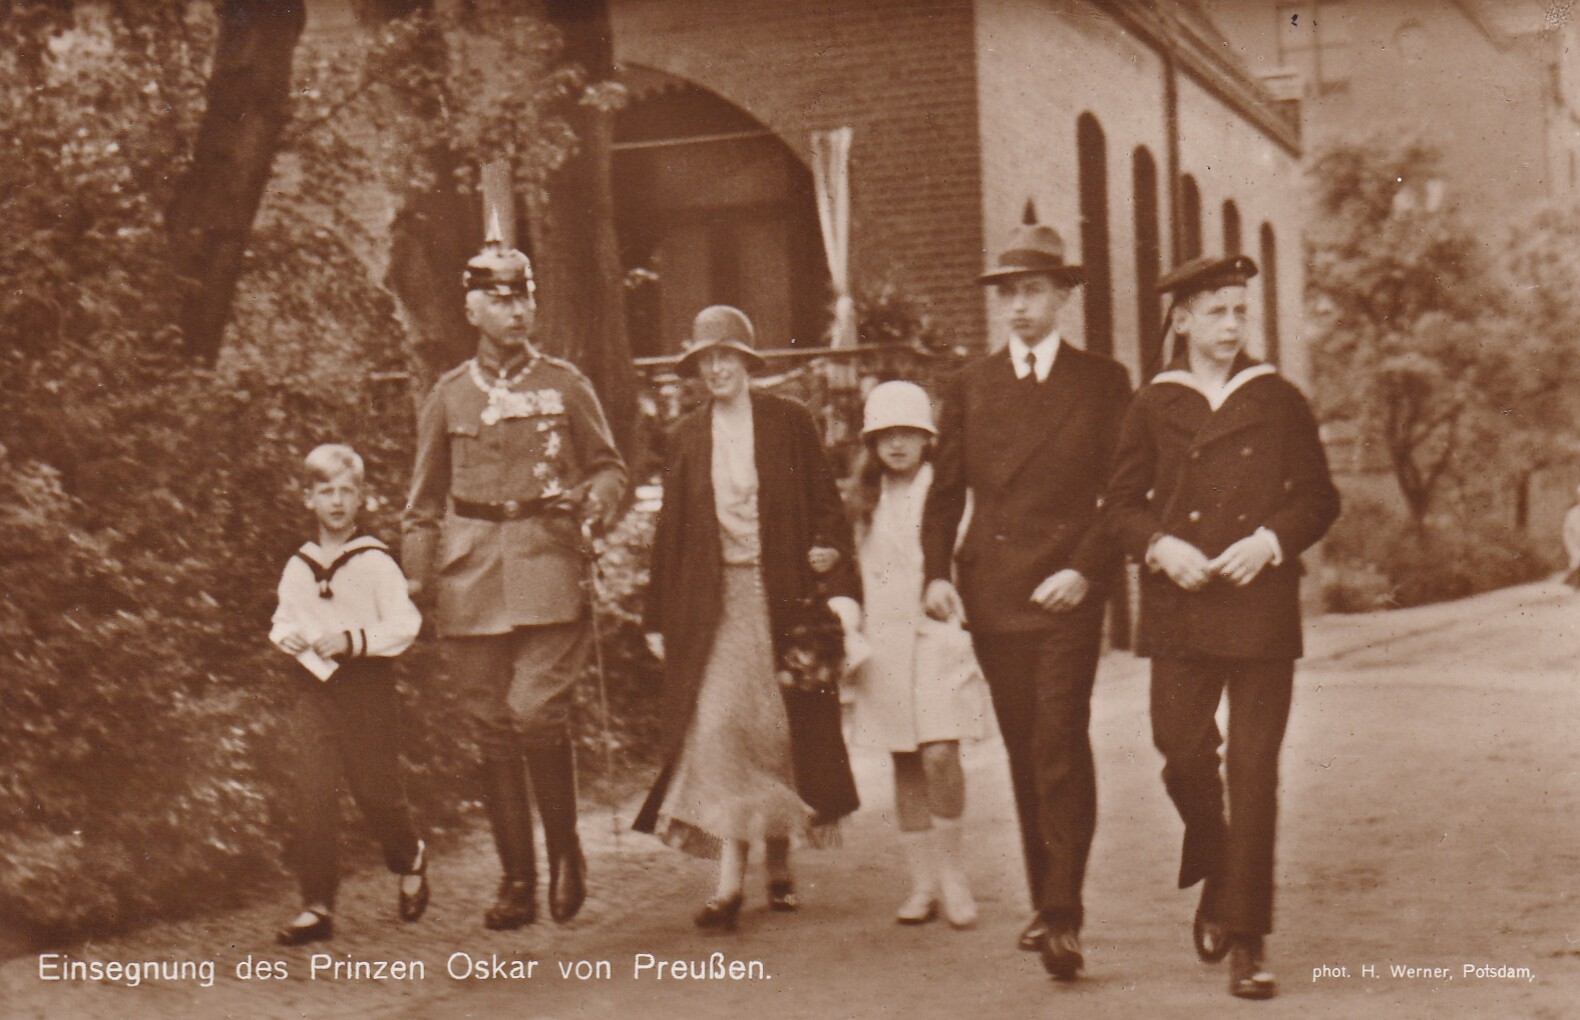 Bildpostkarte mit Foto der Familie des Oskar Prinz von Preußen, 1930 (Schloß Wernigerode GmbH RR-F)